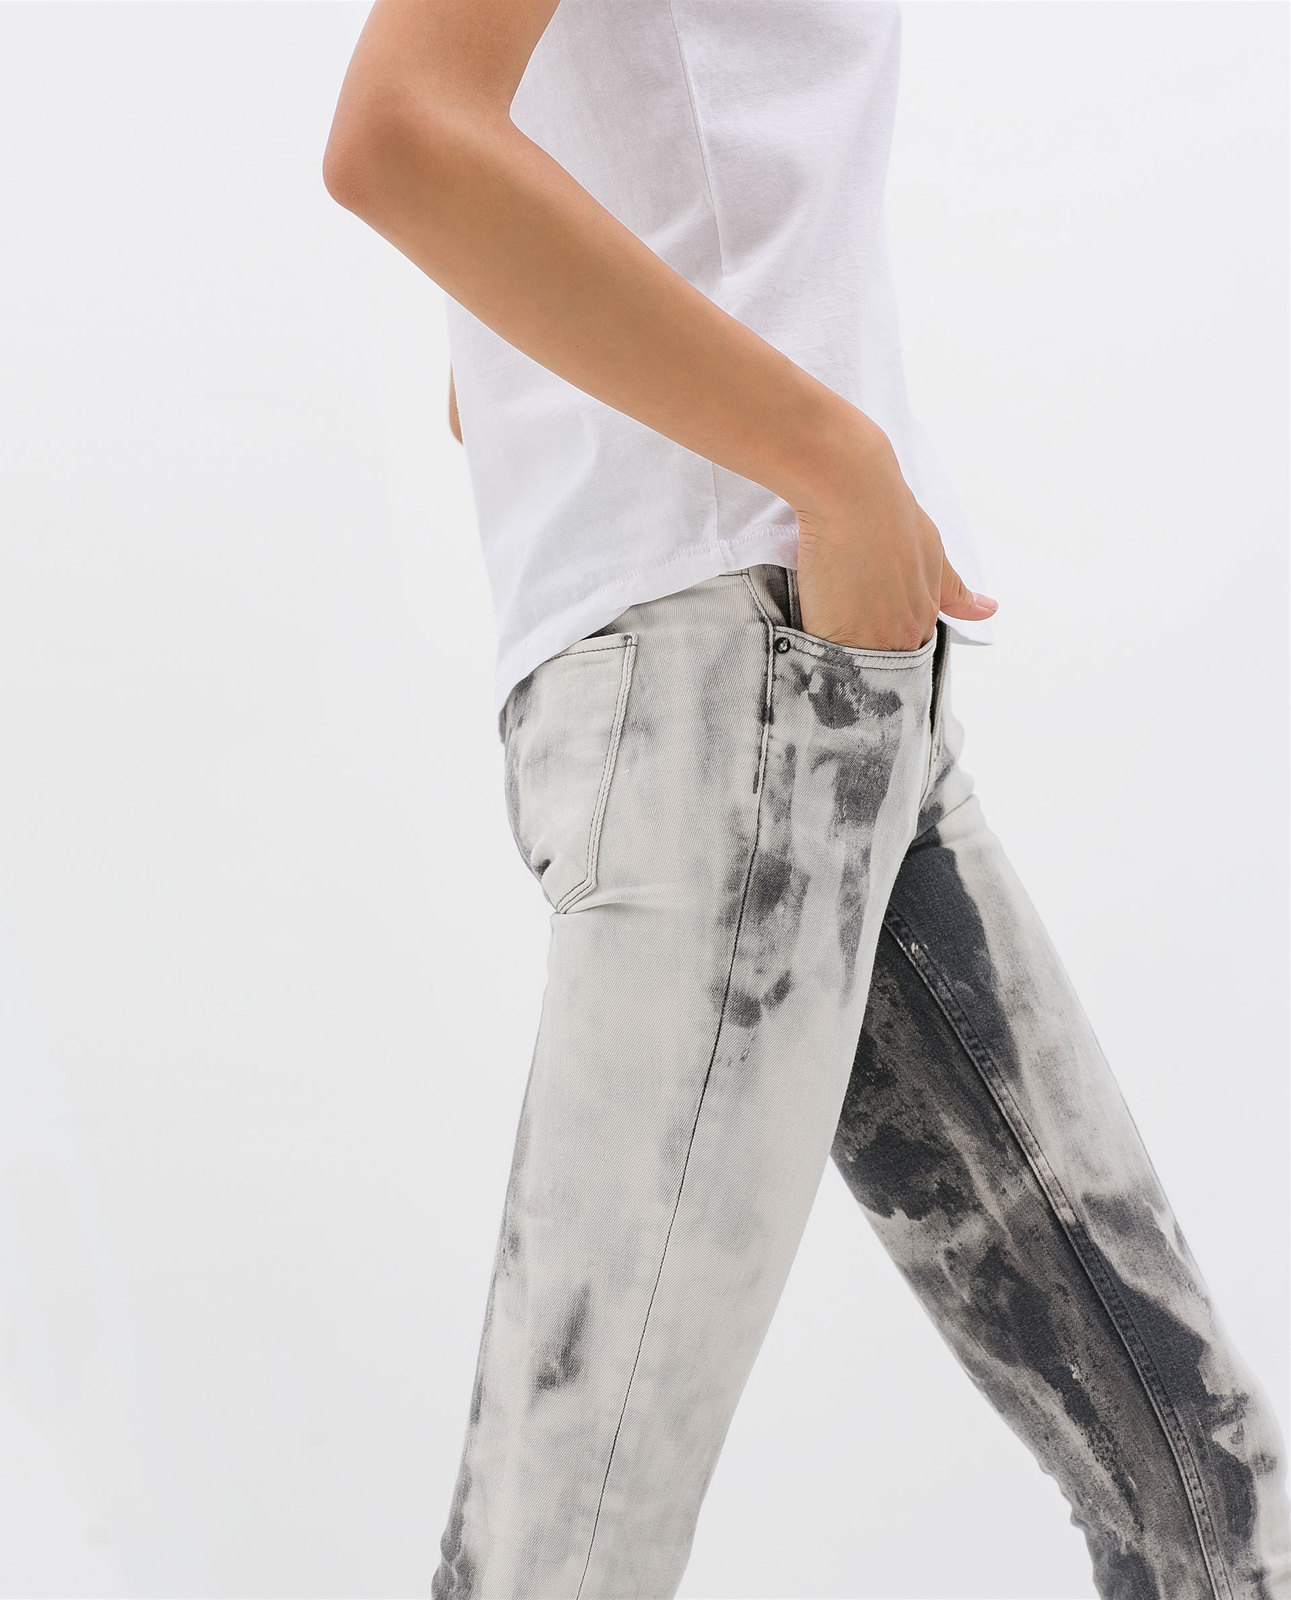 Zara tie-dye jeans 2014.4.15 #56508 fotója